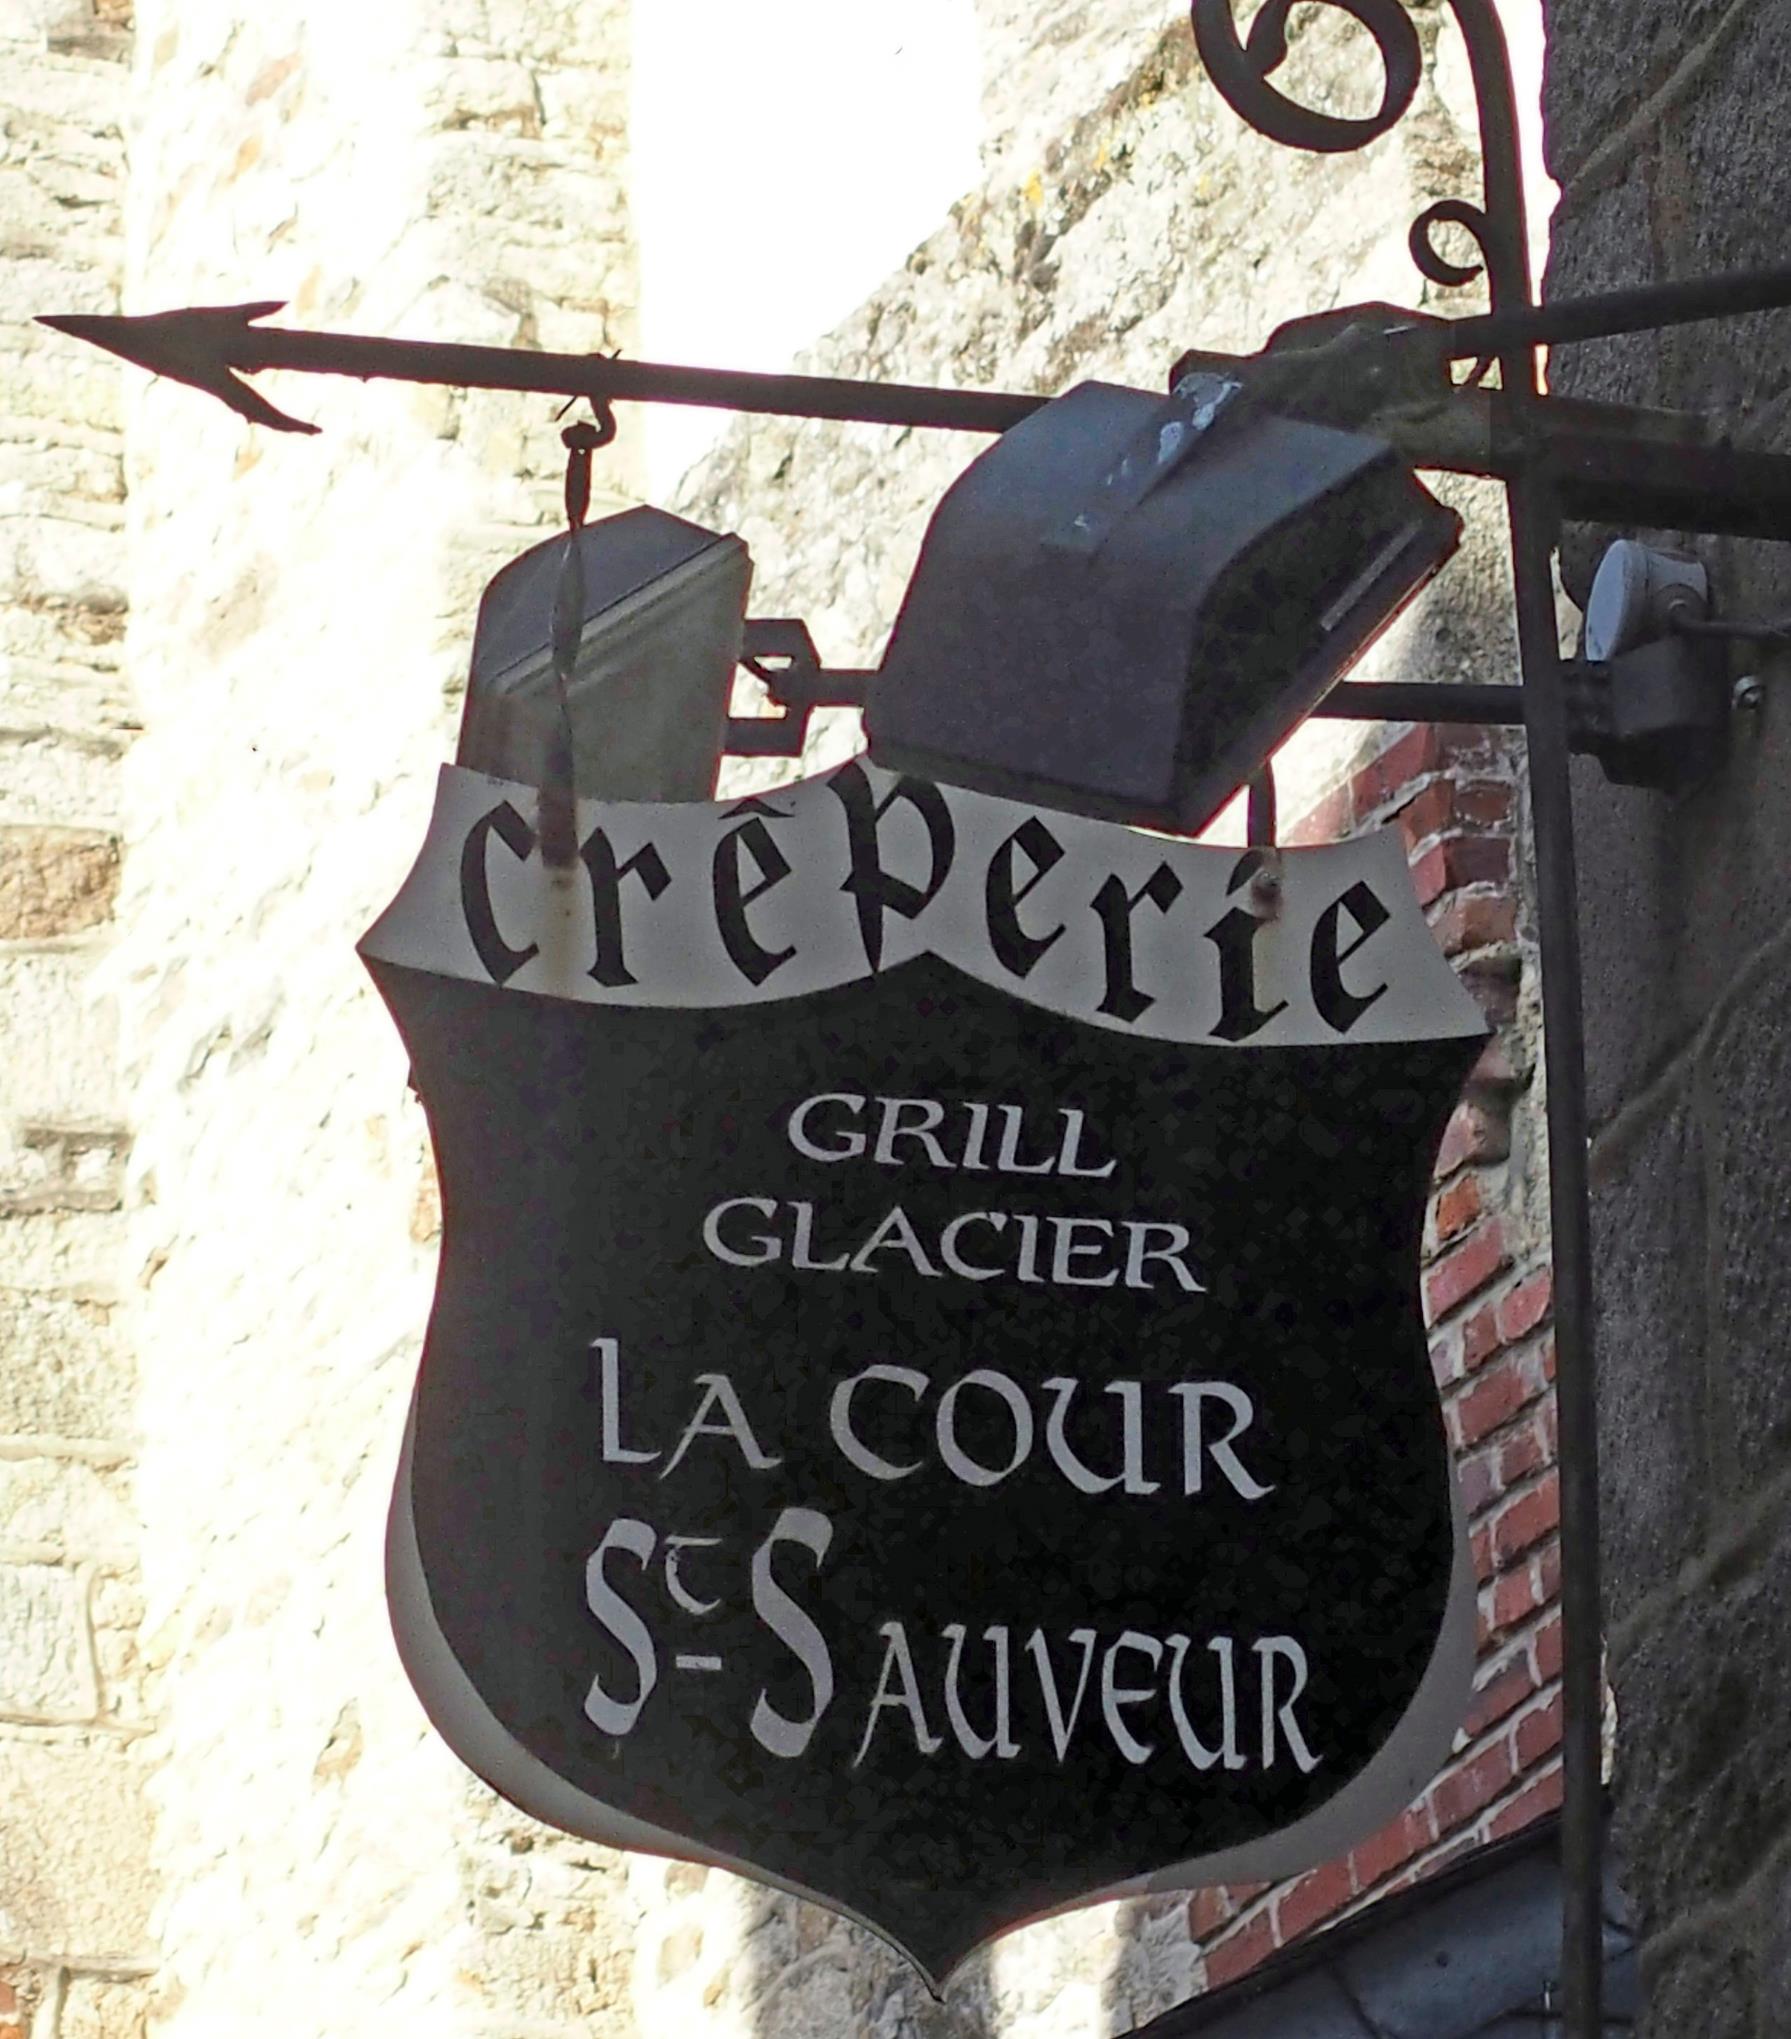 La Cour St Sauveur (crêperie-grill-glacier) - Dinan